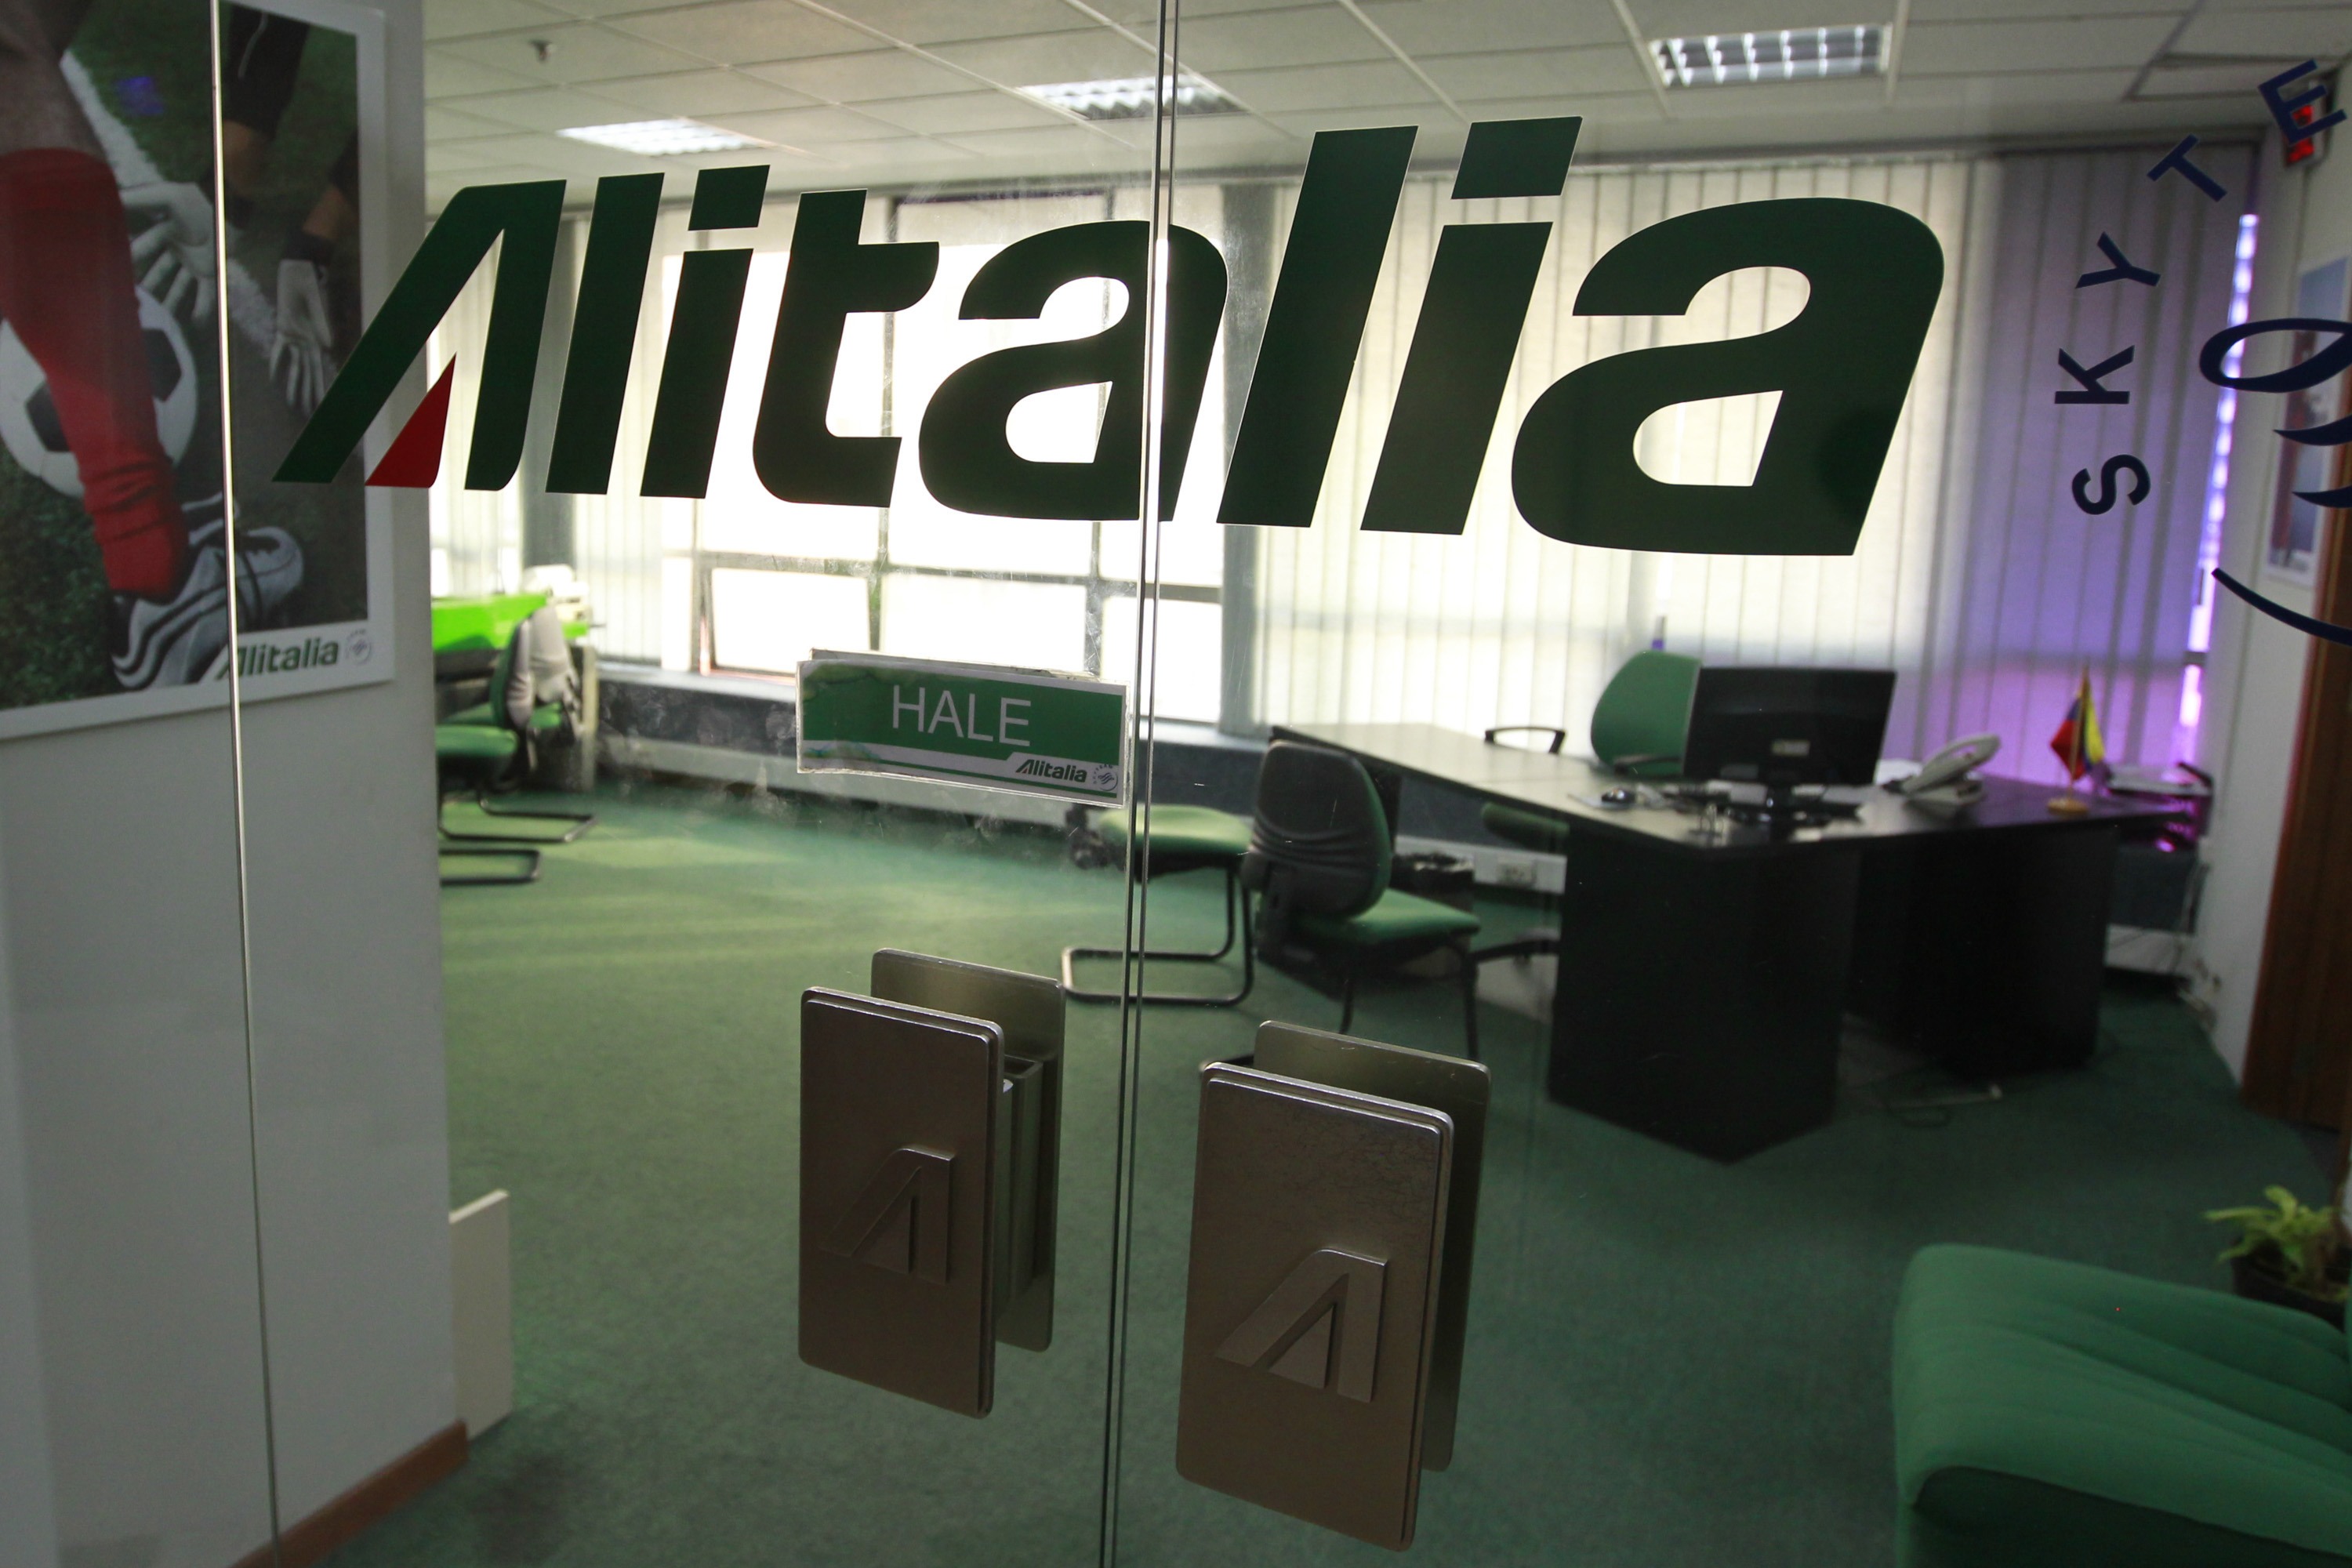 Alitalia confirma suspensión de vuelos a Caracas